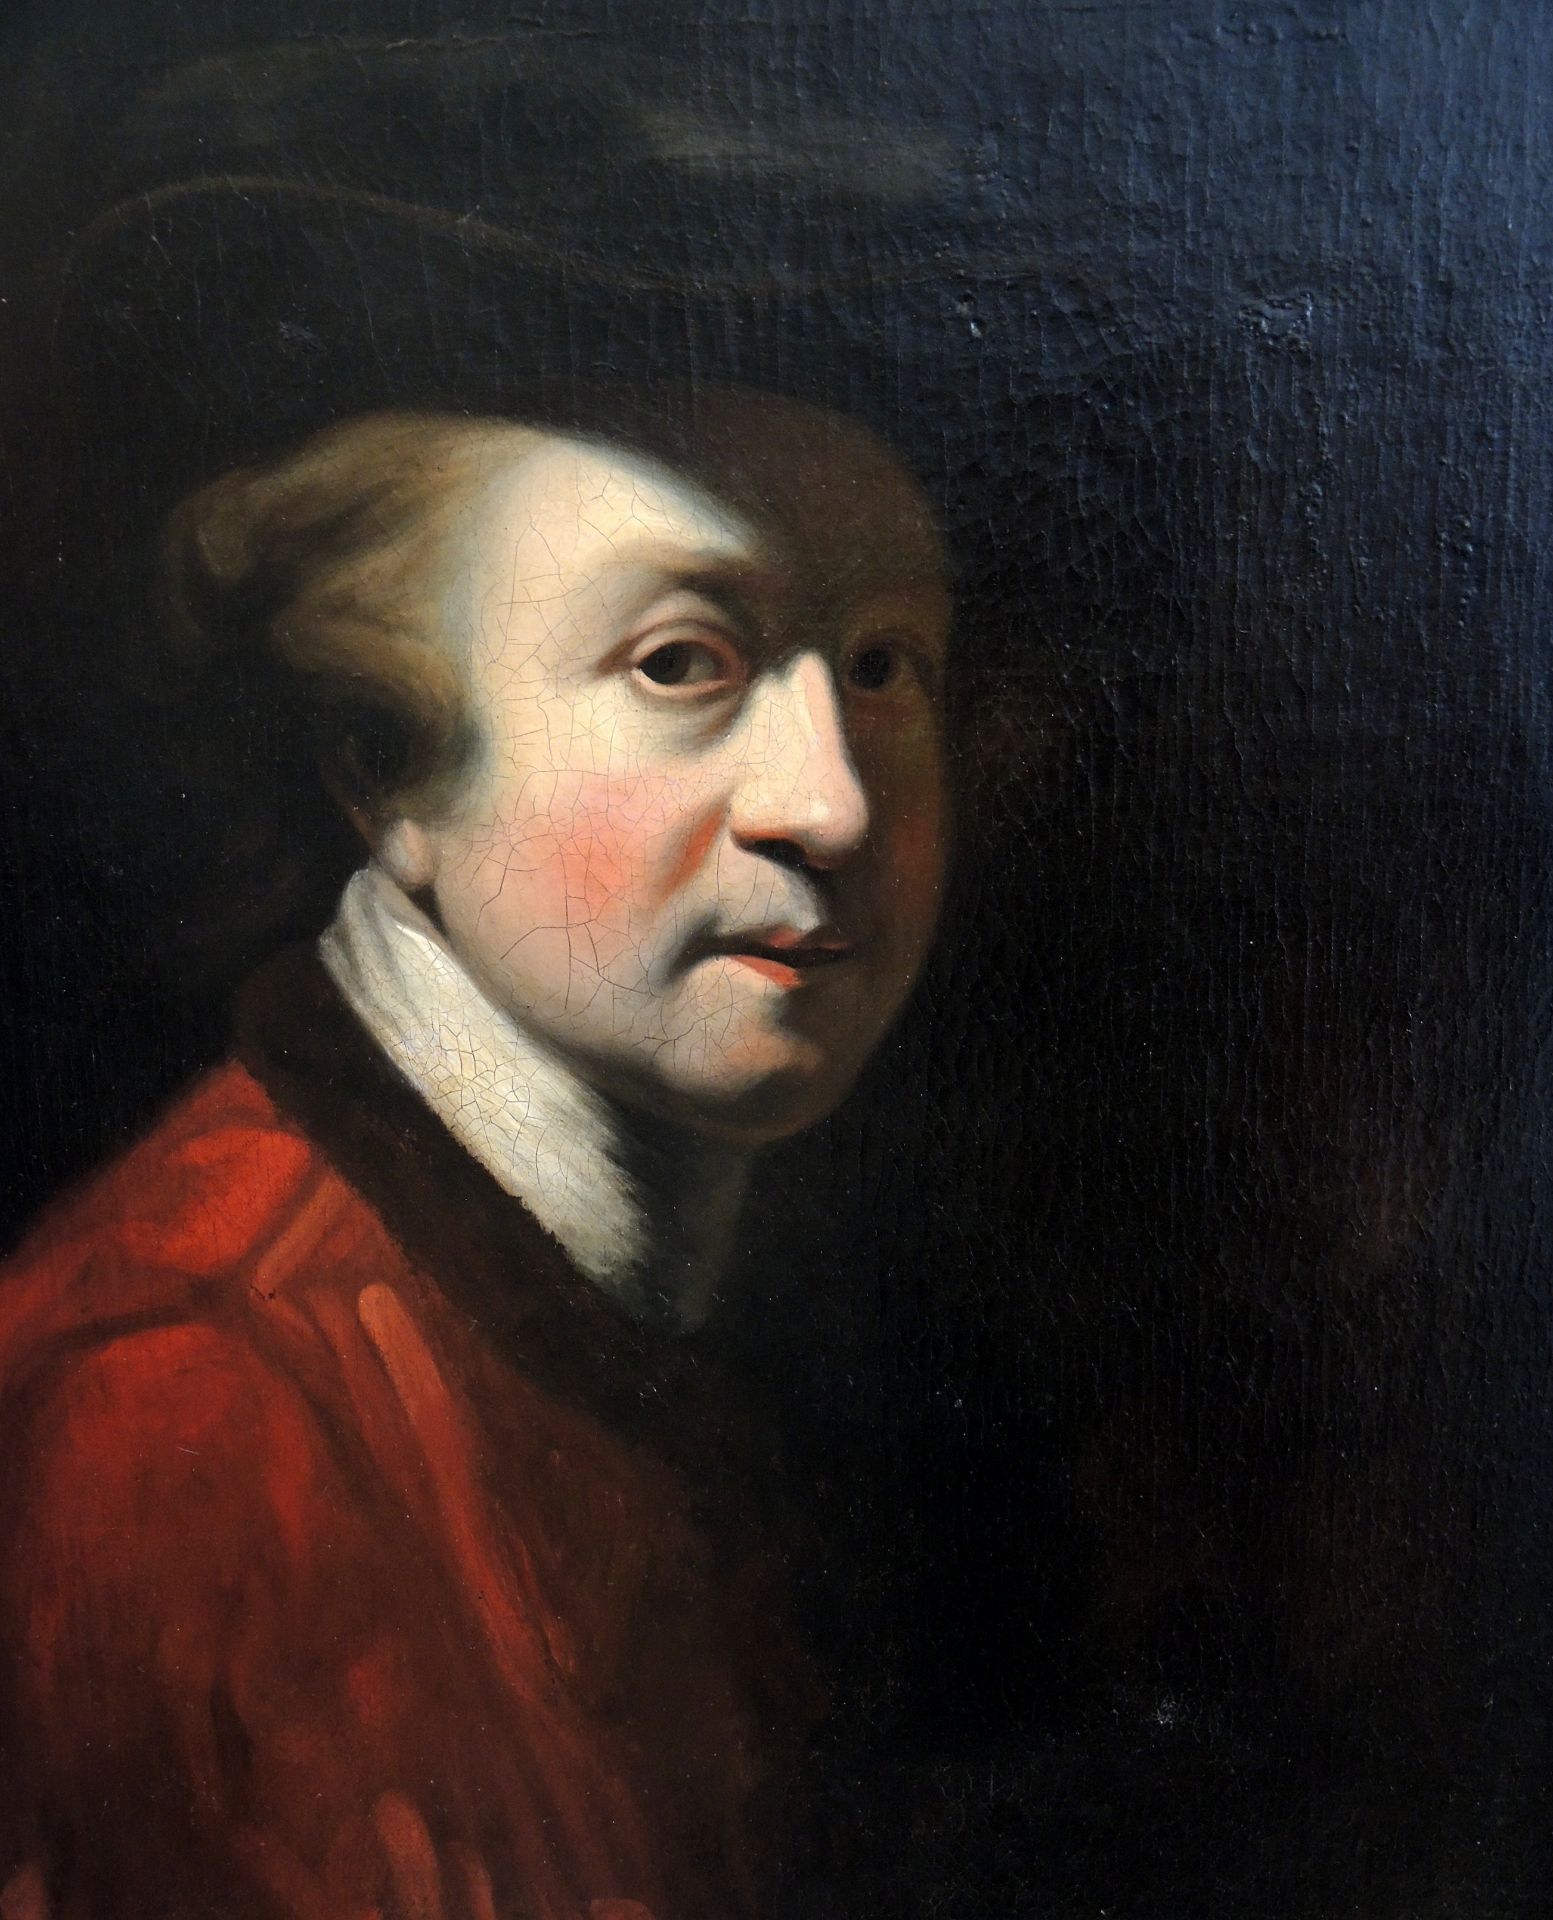 Porträt von Sir Joshua Reynolds